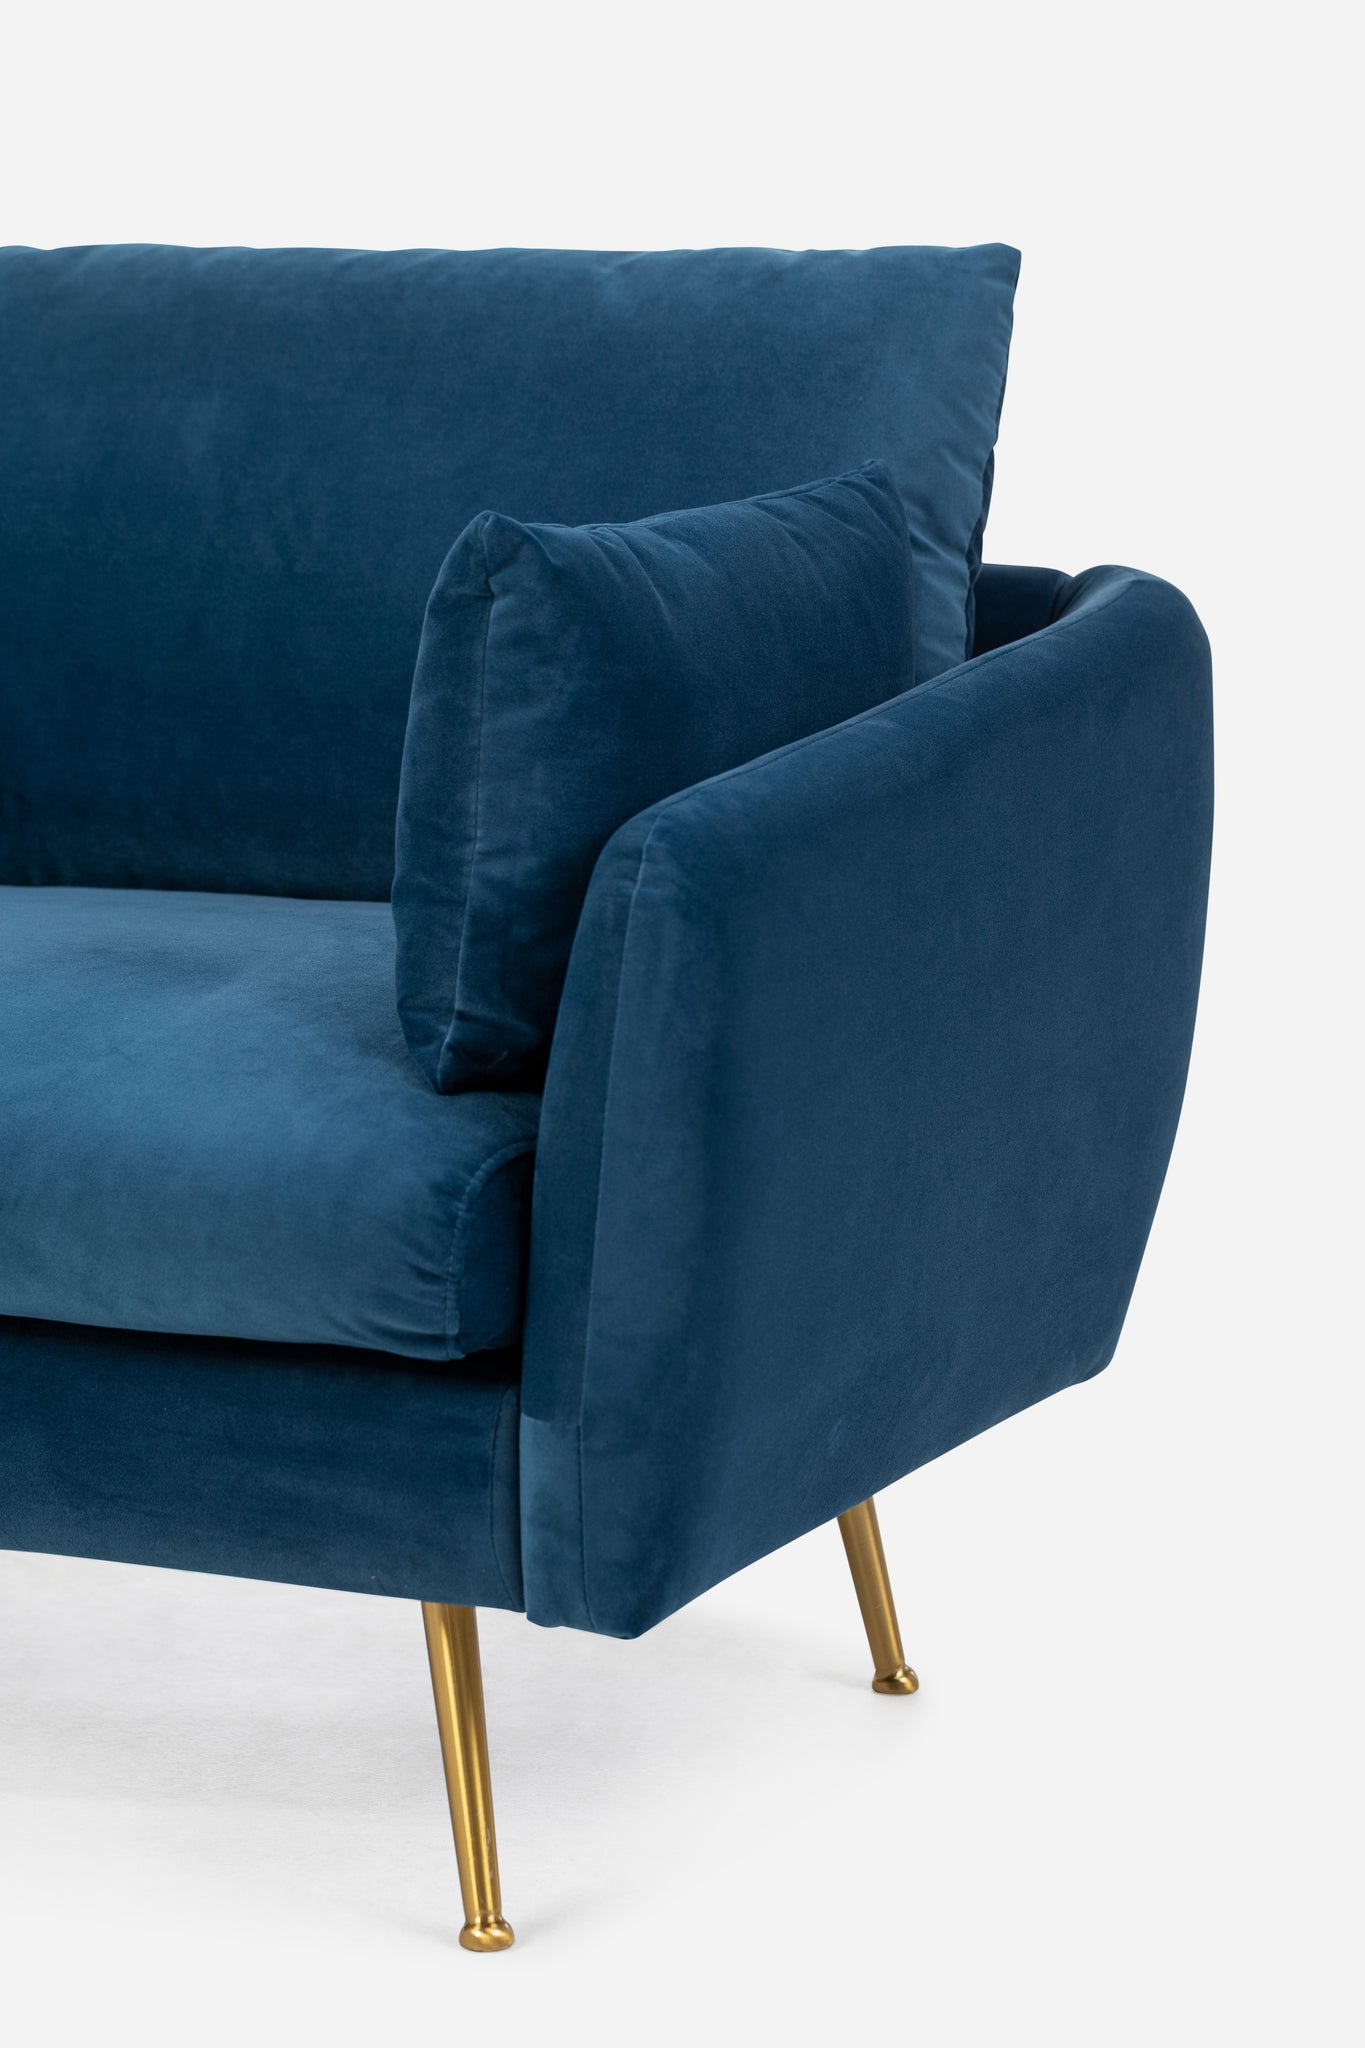 park armchair shown in blue velvet with gold legs